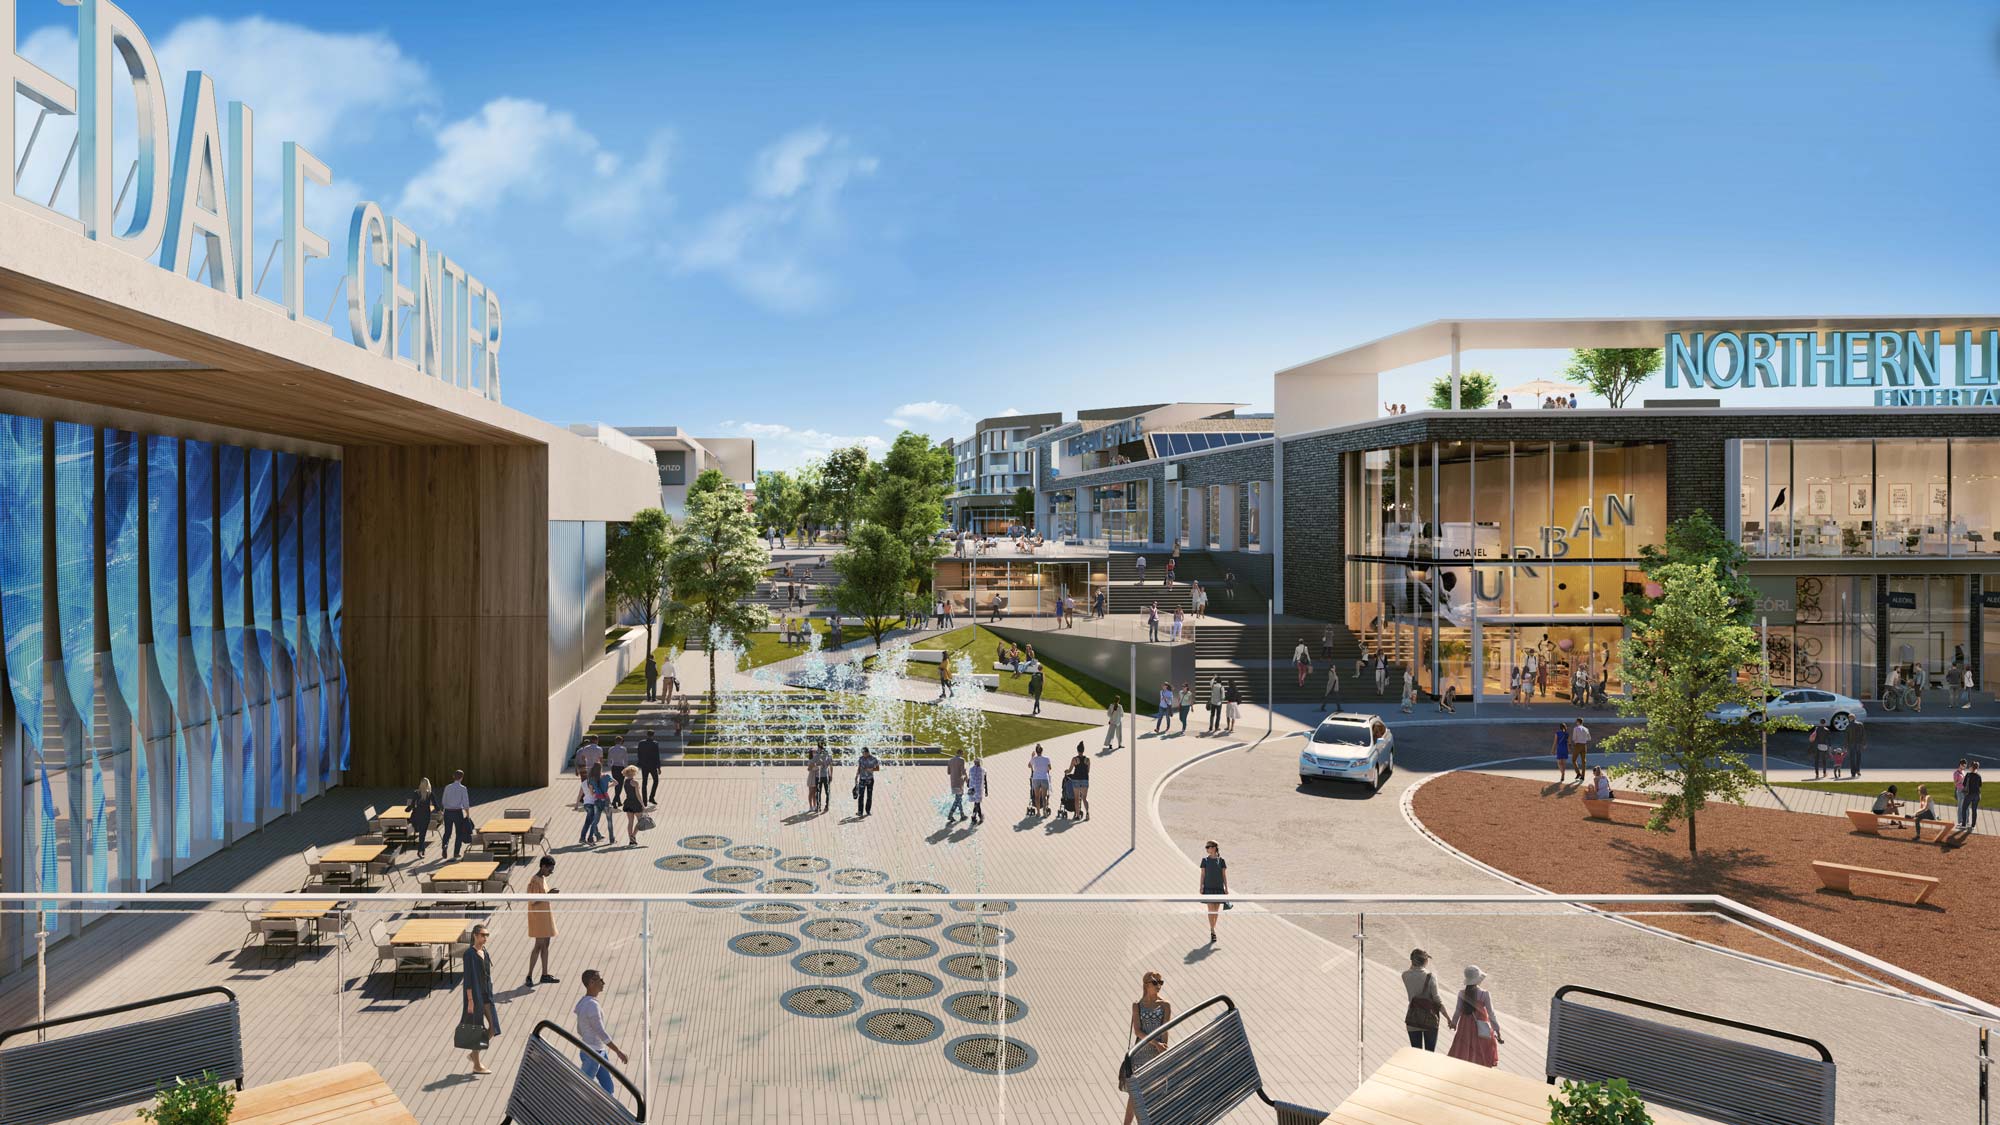 rendering shopping center Rosedale